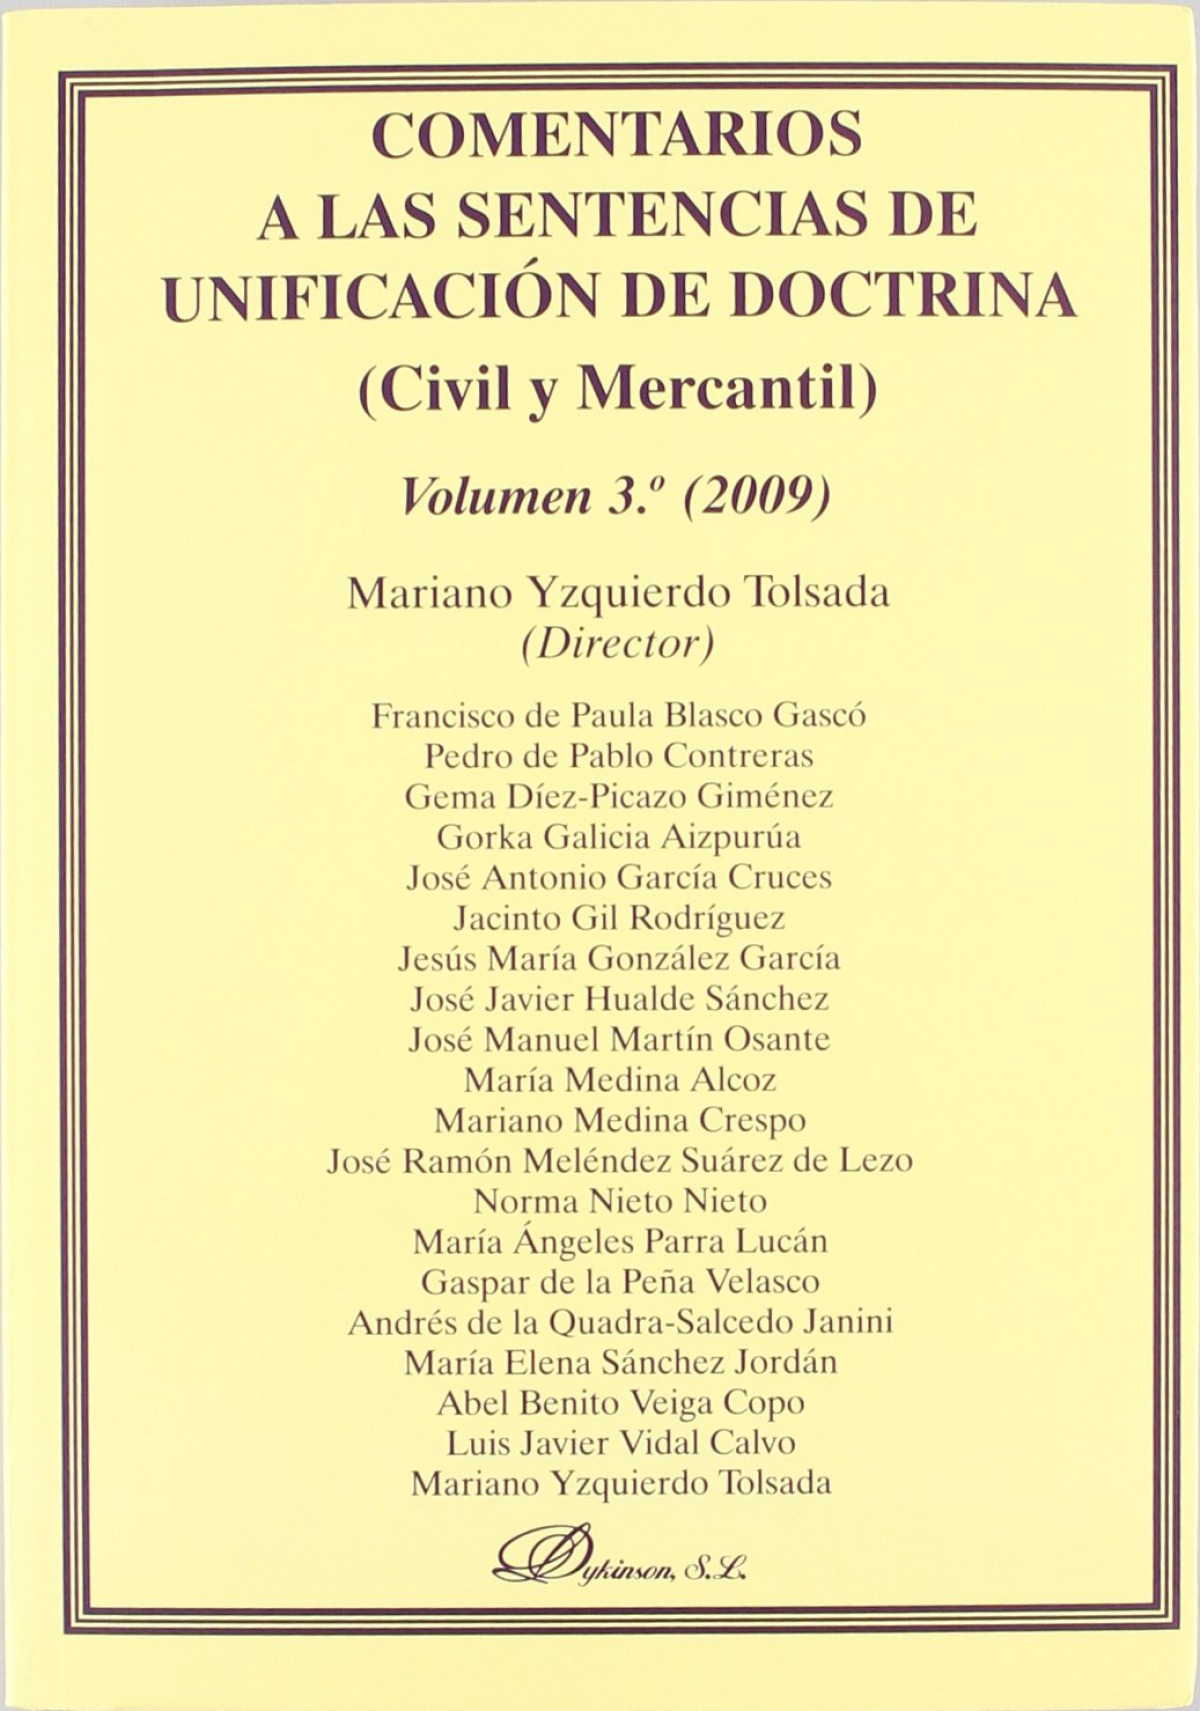 Comentarios a las sentencias de unificación de doctrina. Civil y Merca - Yzquierdo Tolsada, Mariano